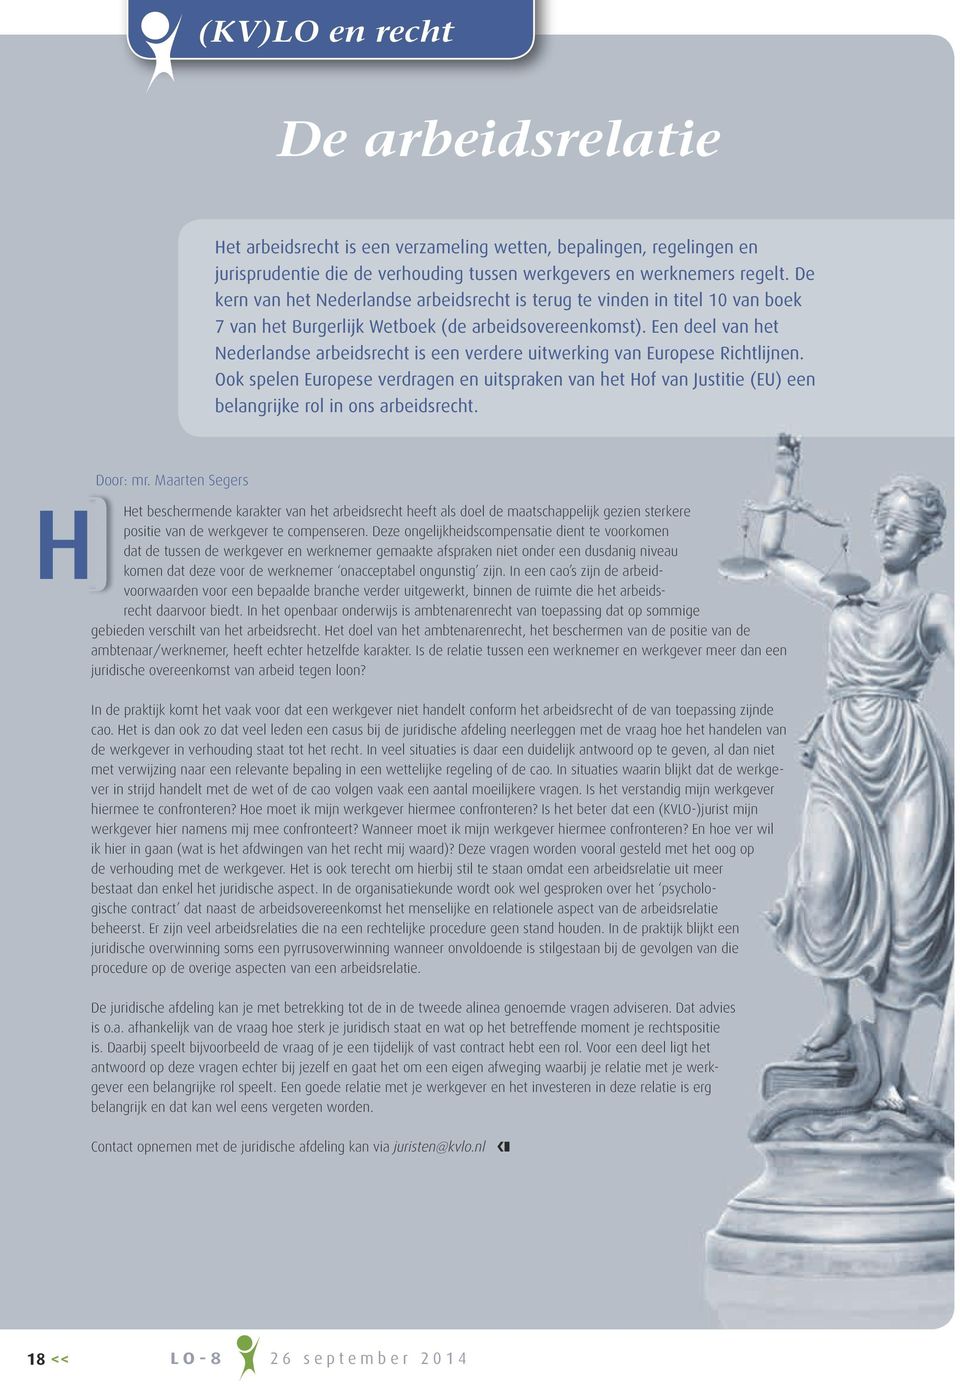 Een deel van het Nederlandse arbeidsrecht is een verdere uitwerking van Europese Richtlijnen.